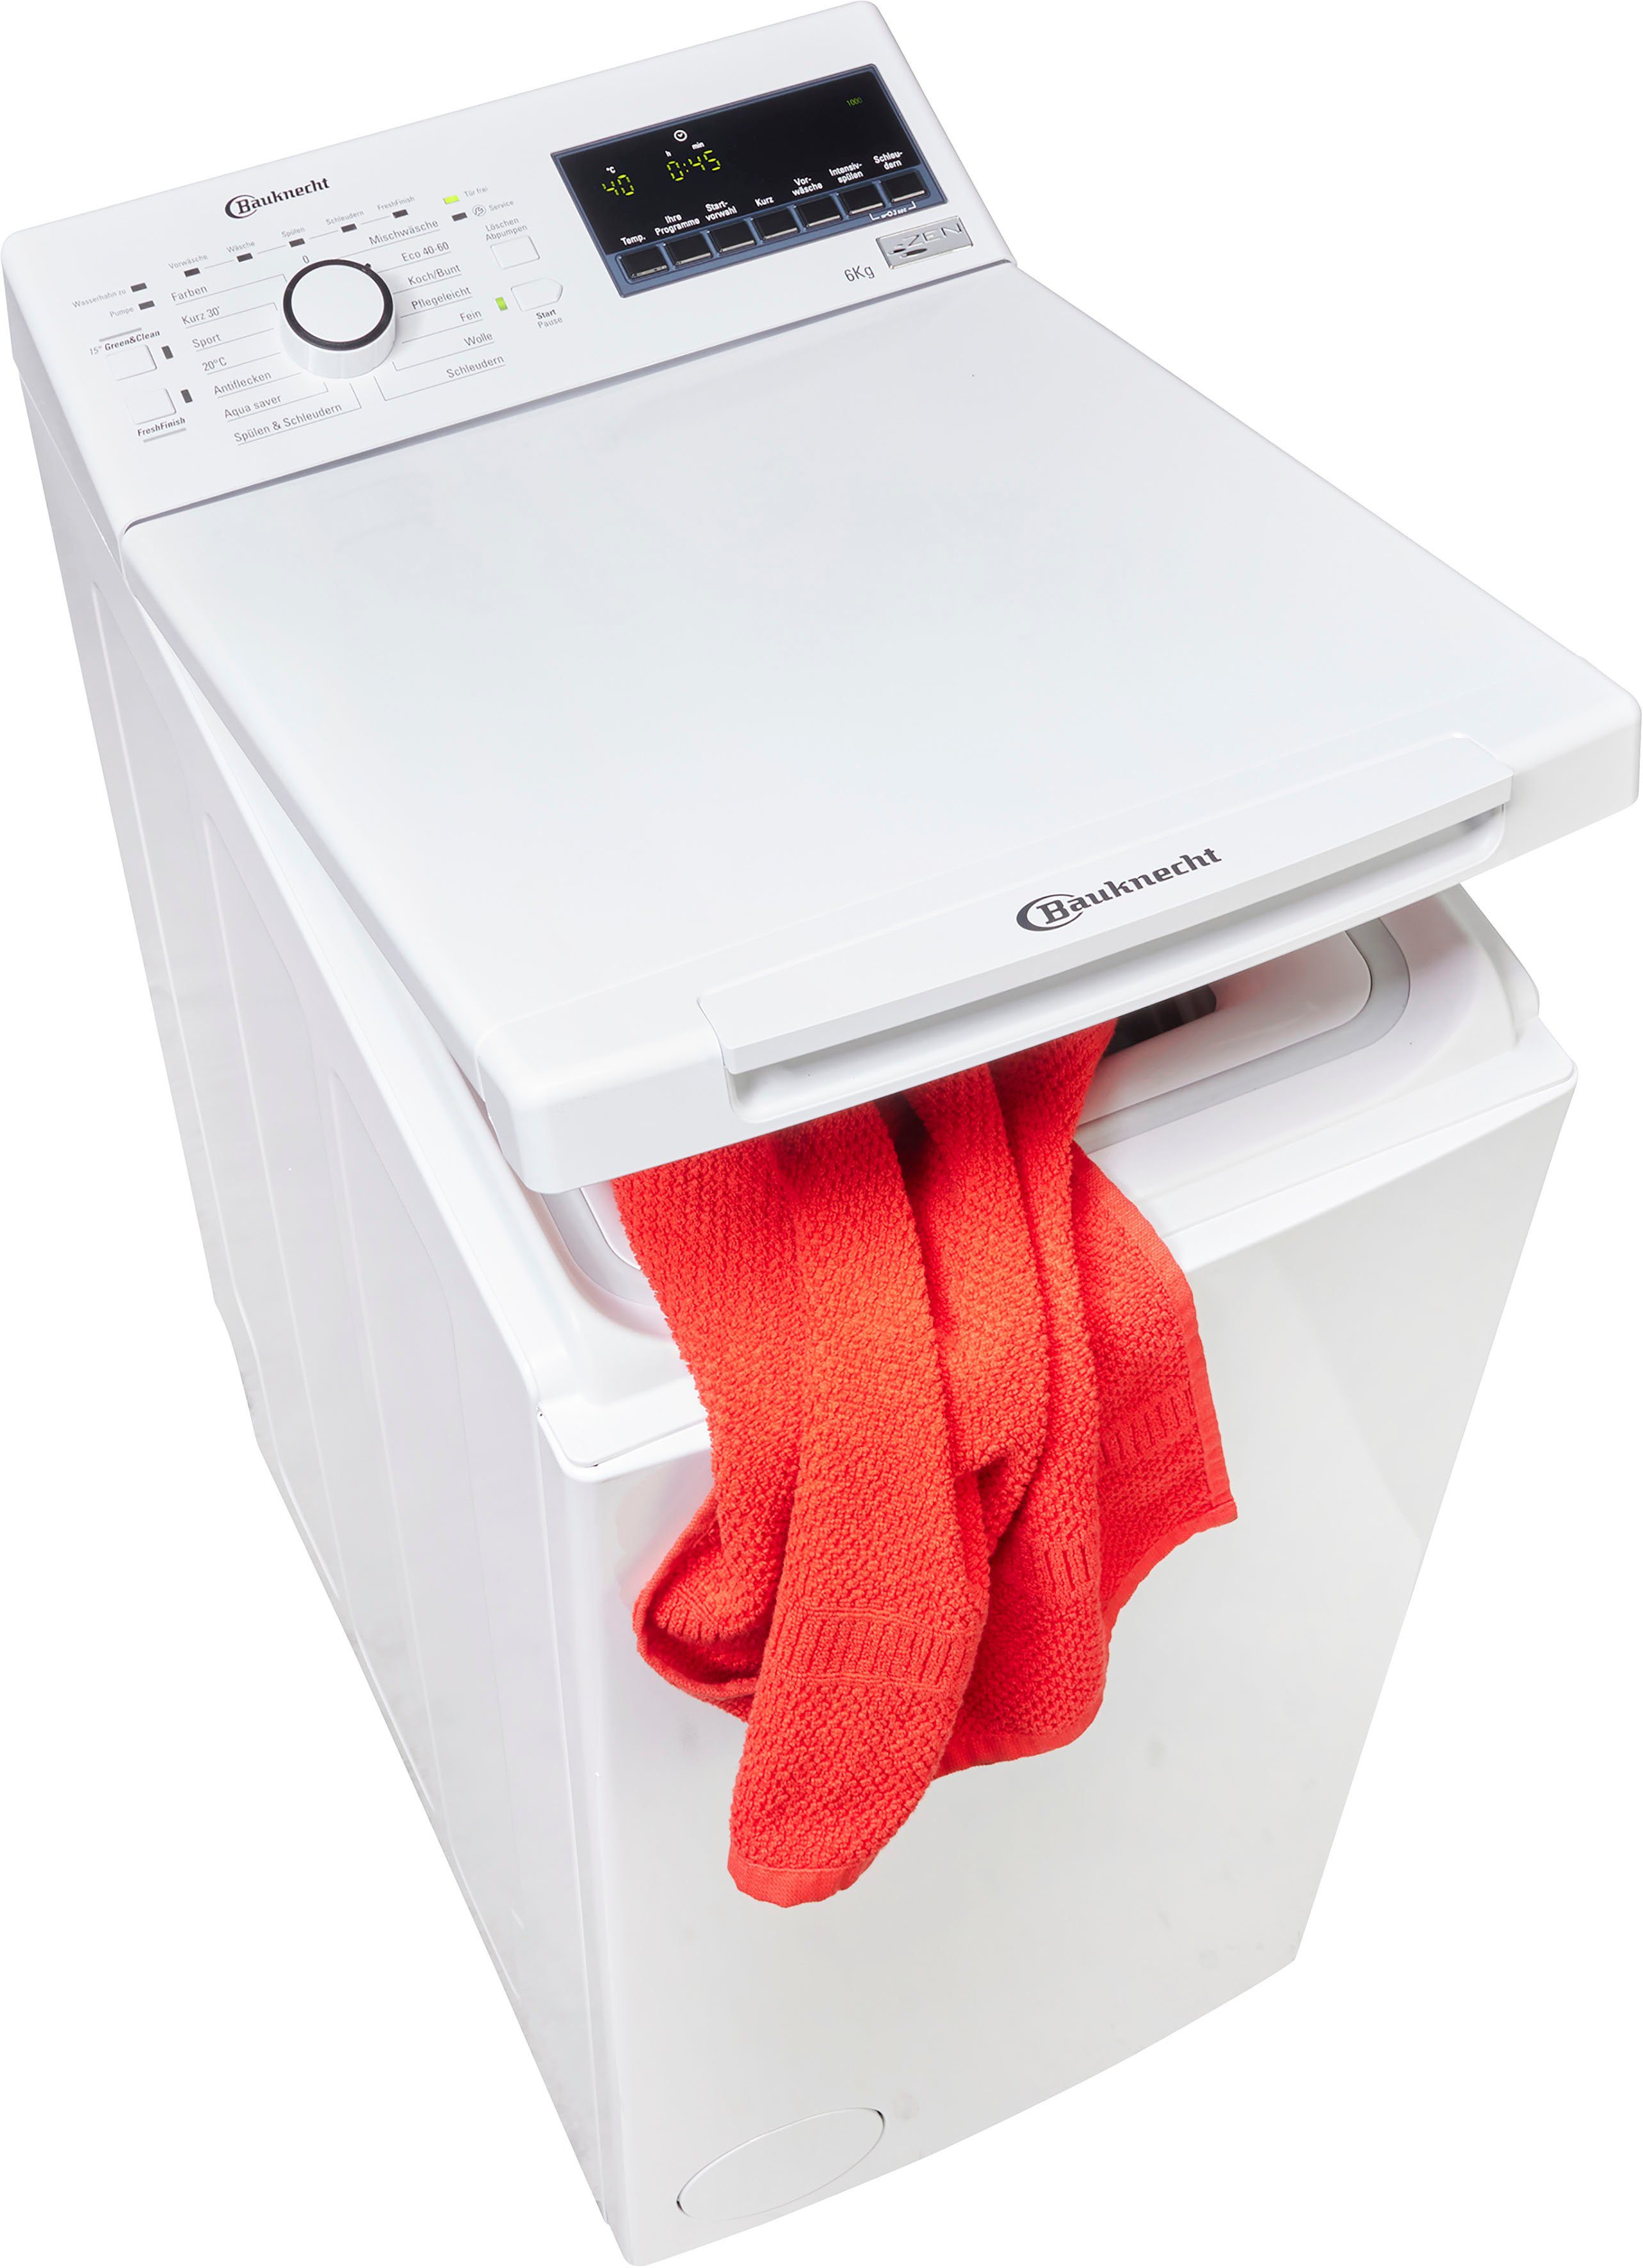 BAUKNECHT Waschmaschine Toplader WMT Evo 6B, 6 kg, 1200 U/min online kaufen  | OTTO